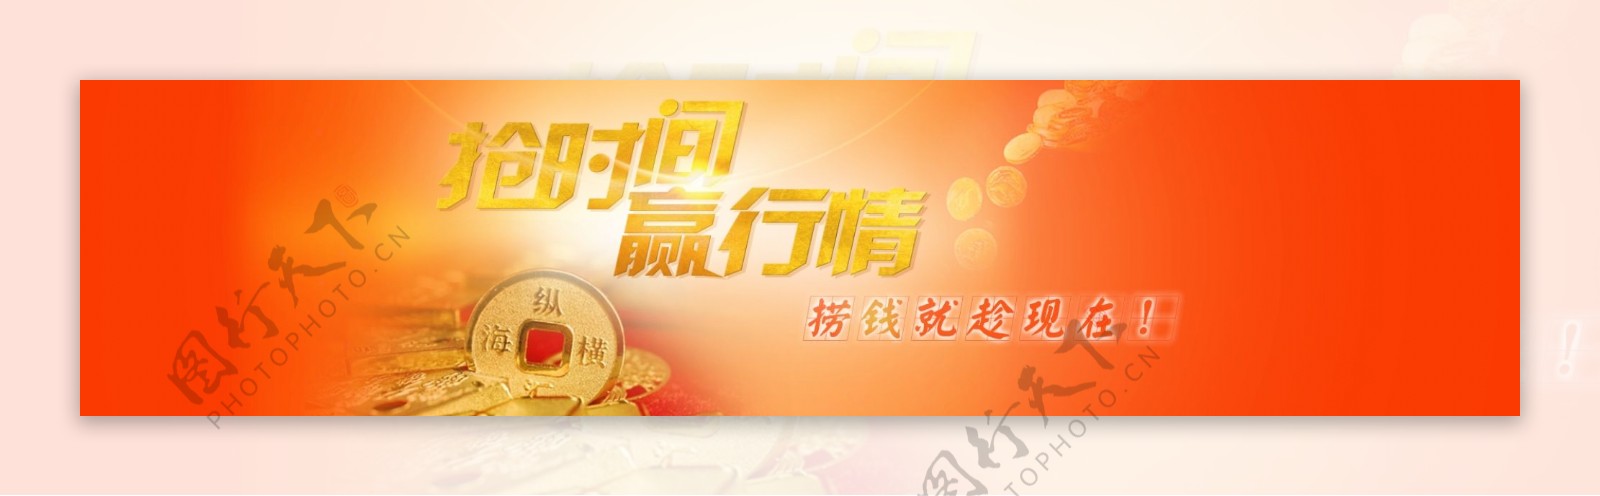 金融股票企业网站banner图片